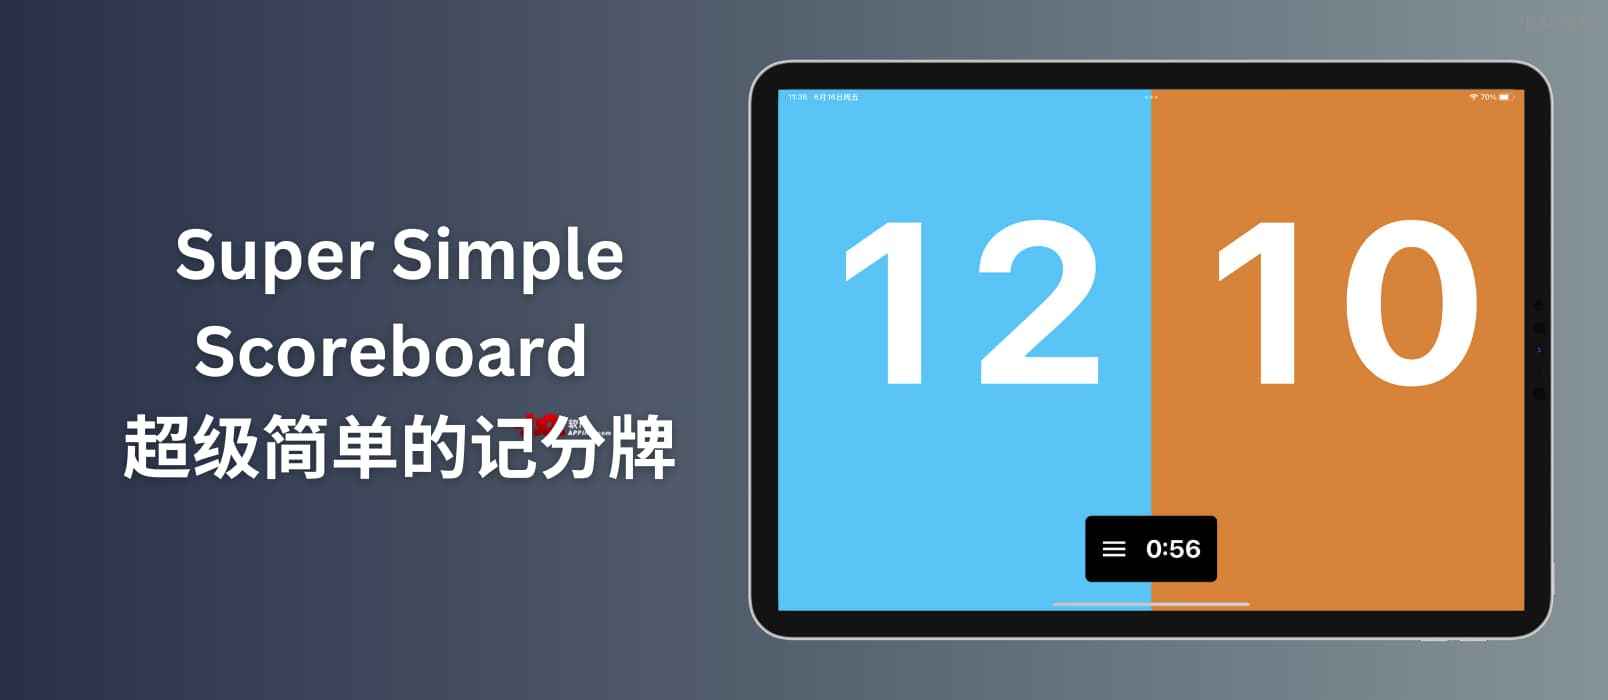 超级简单的记分牌 Super Simple Scoreboard：家用记分牌[Apple]